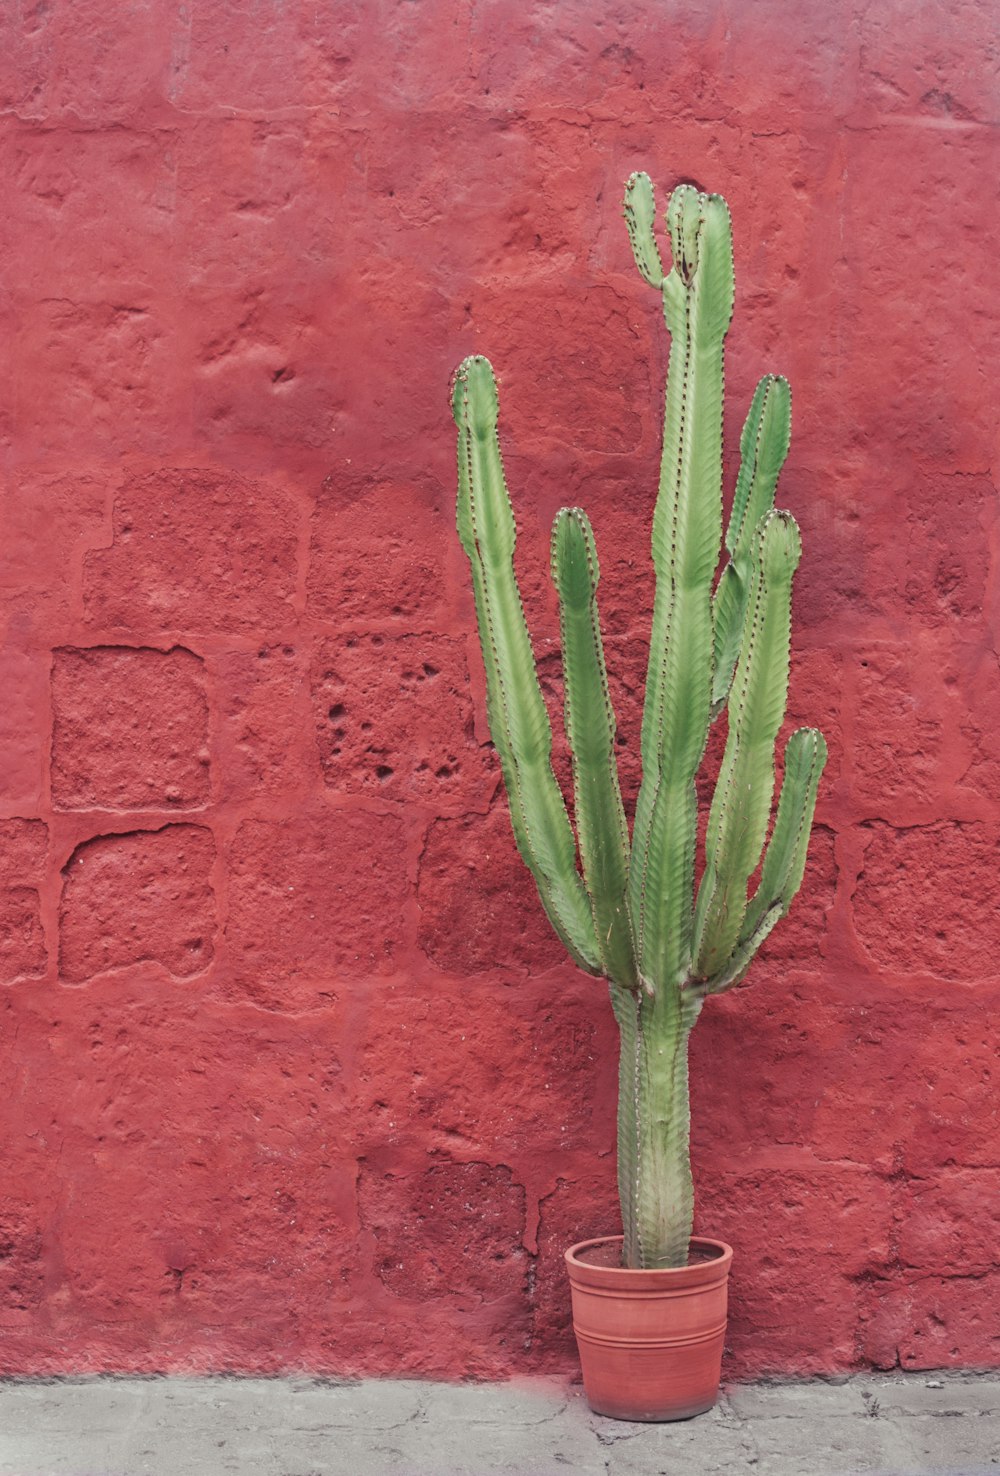 planta verde do cacto na parede vermelha do concreto